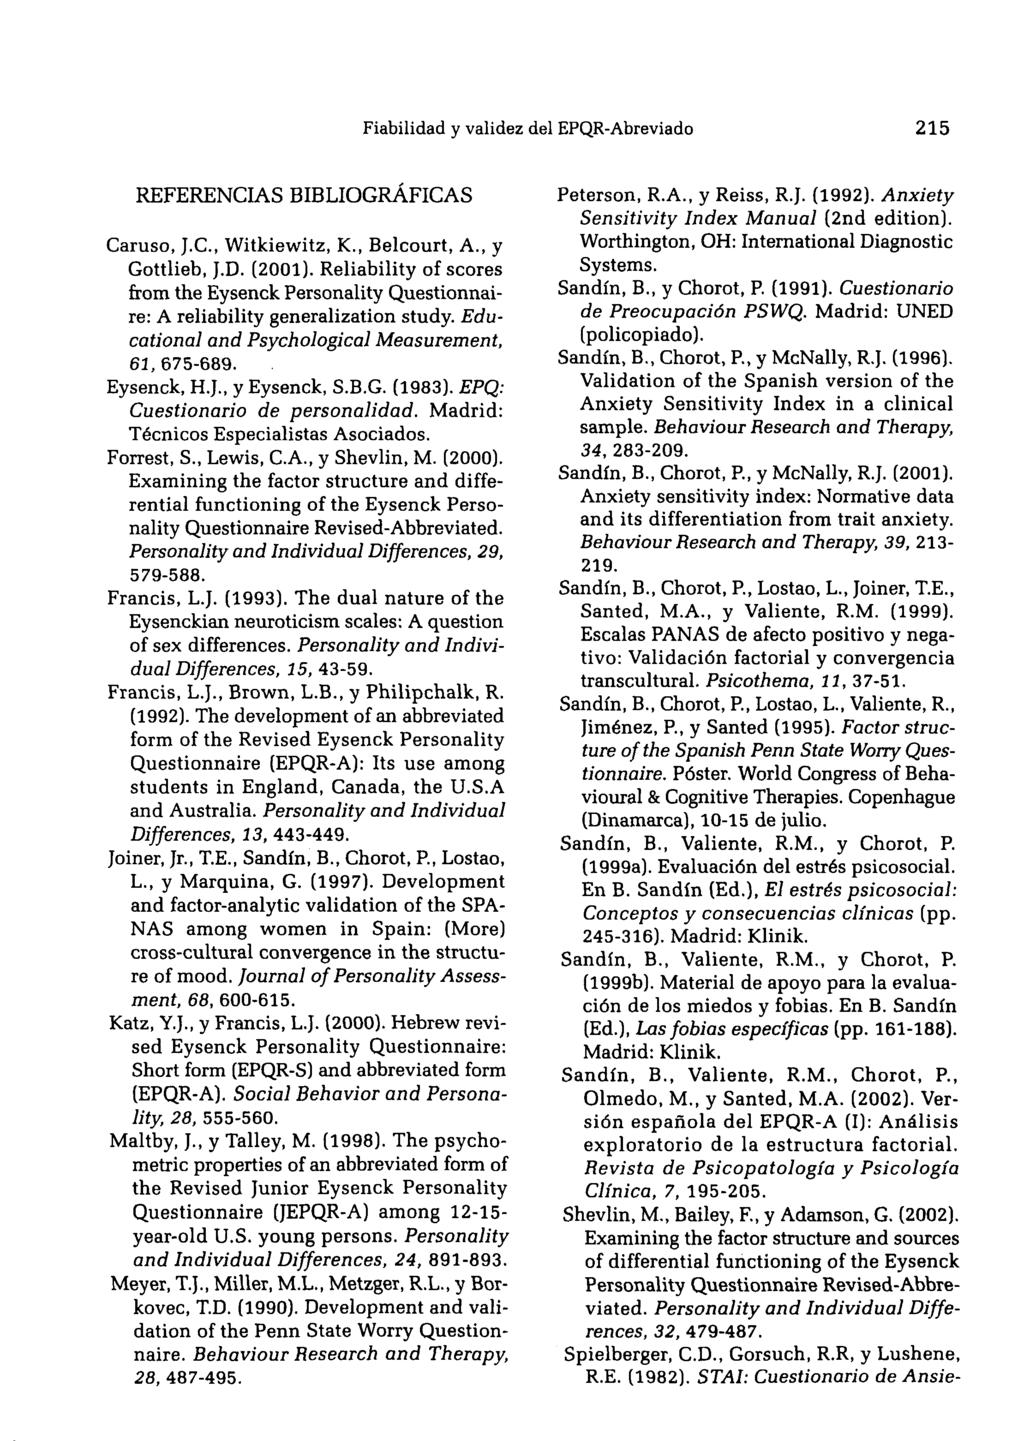 Fiabilidad y validez del EPQR-Abreviado 215 REFERENCIAS BIBLIOGRÁFICAS Caruso, J.C, Witkiewitz, K., Belcourt, A., y Gottlieb, J.D. (2001).